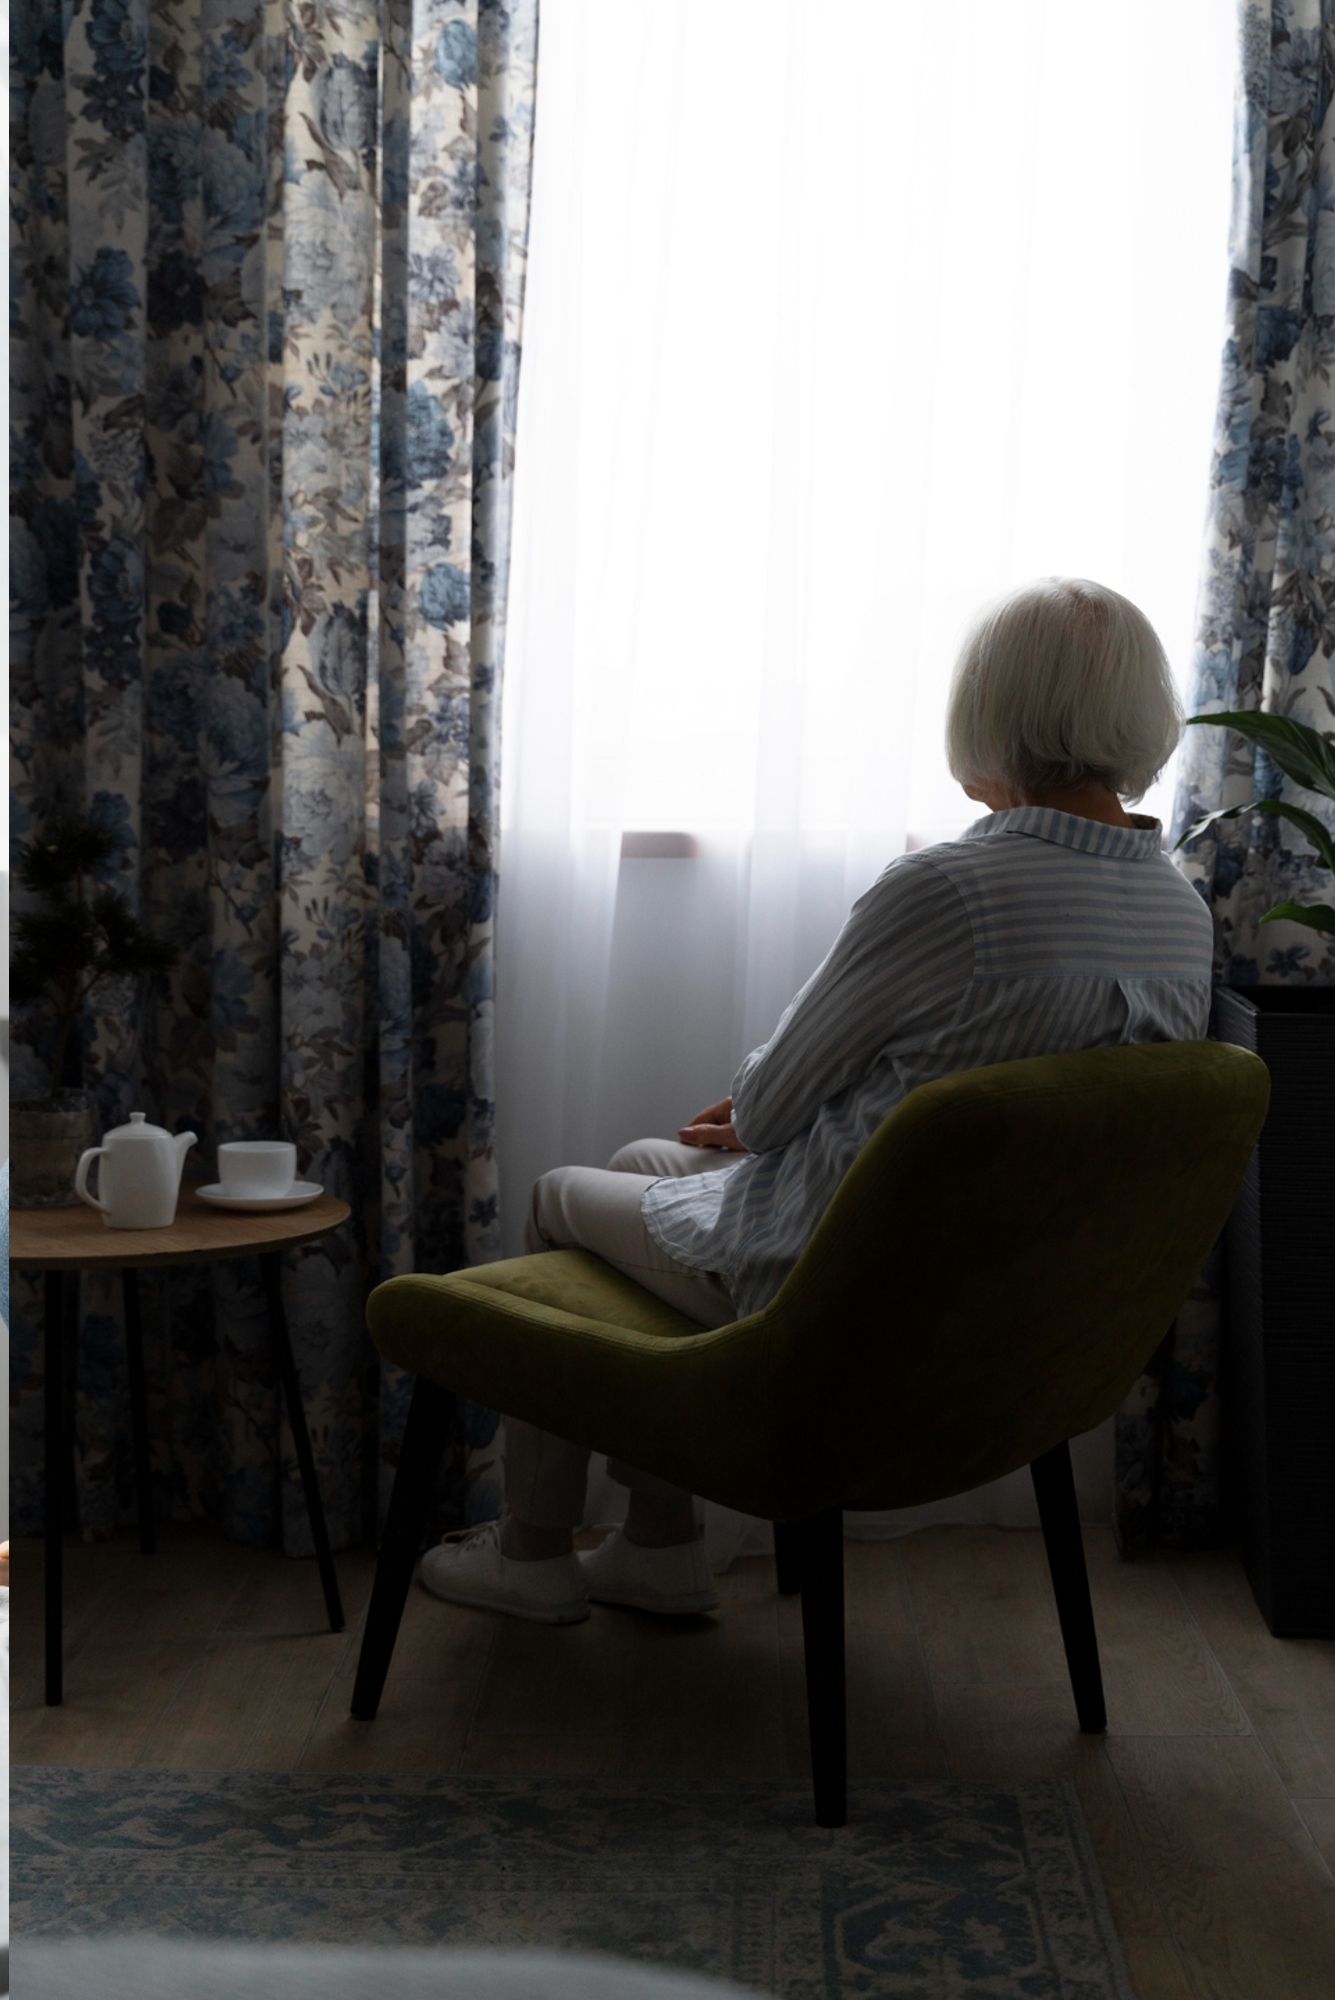 Elderly Women sitting by the window